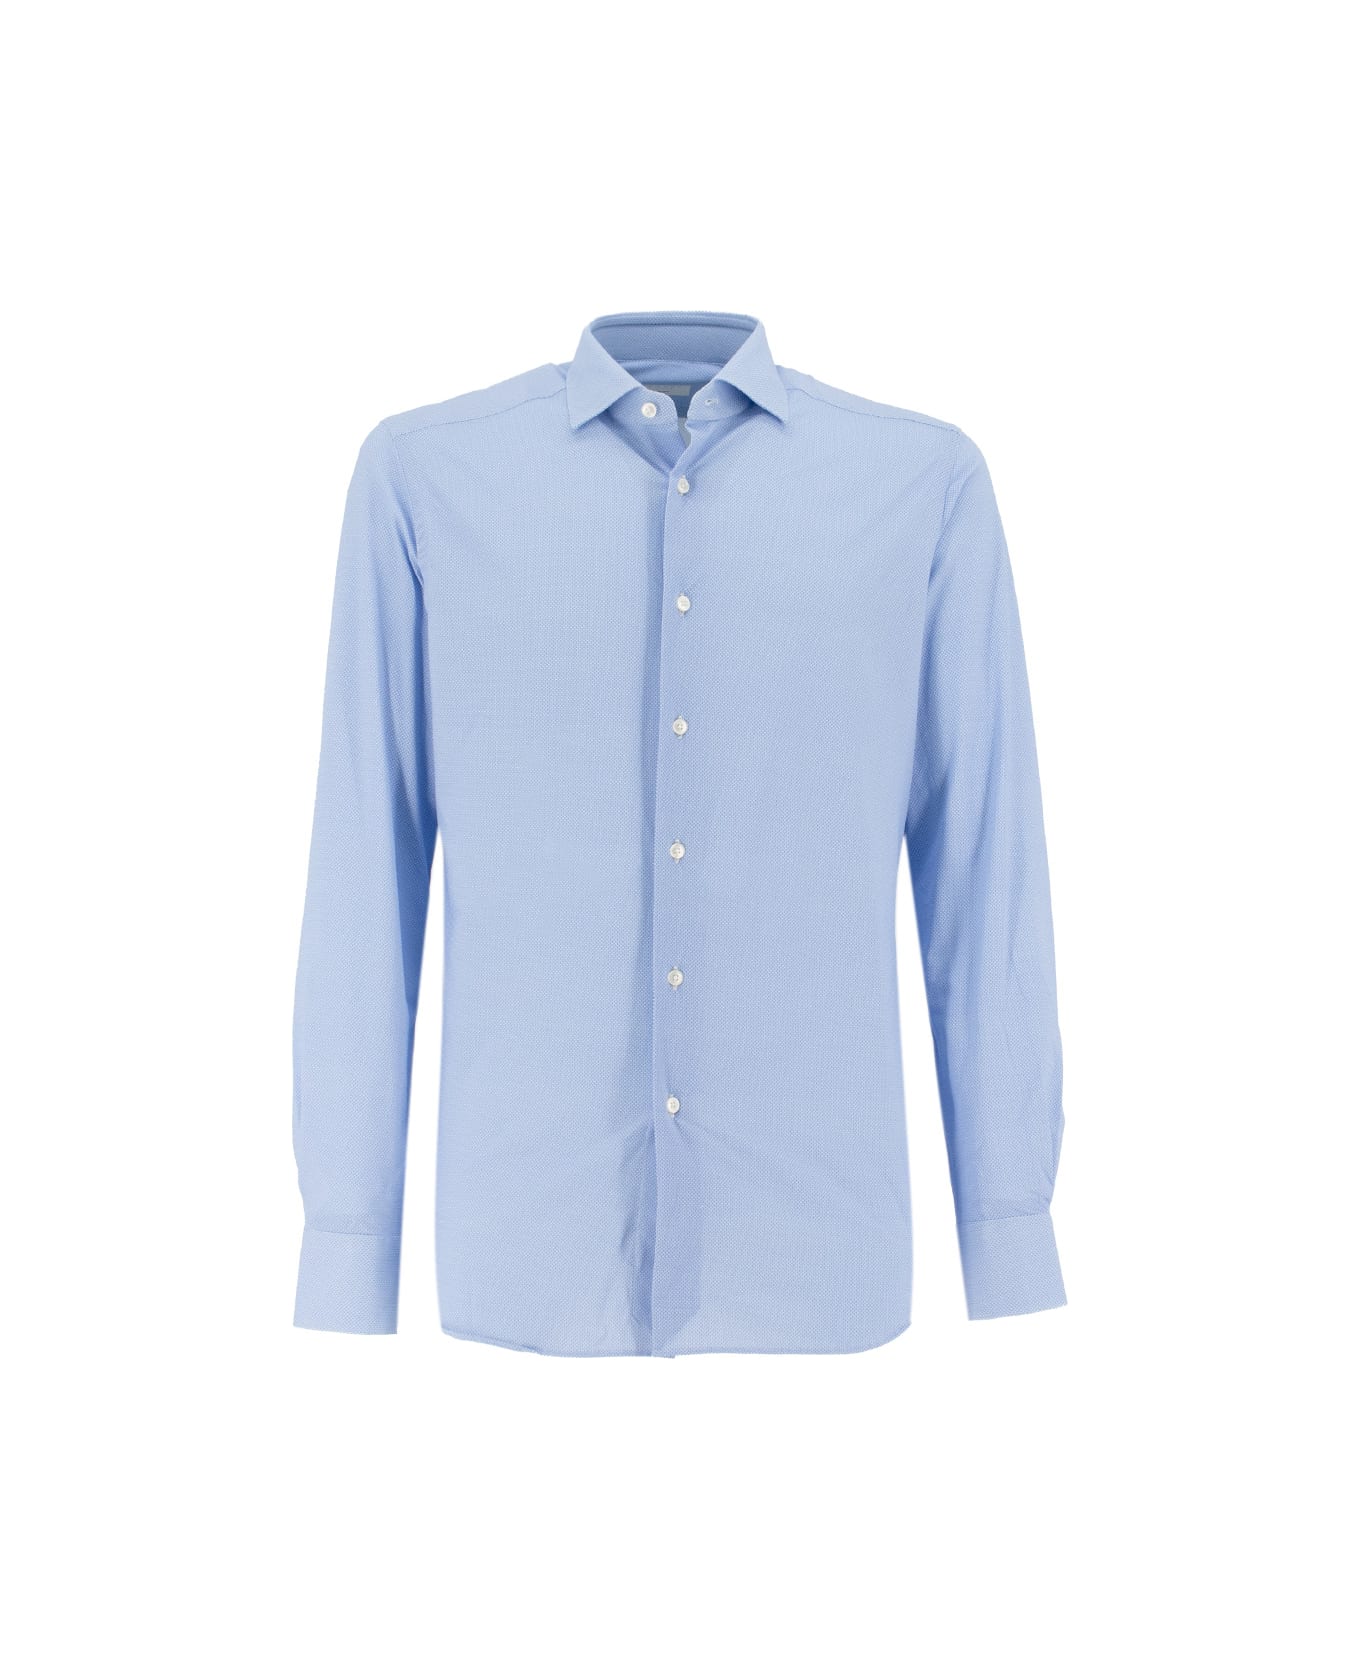 Xacus Shirt - BLUE